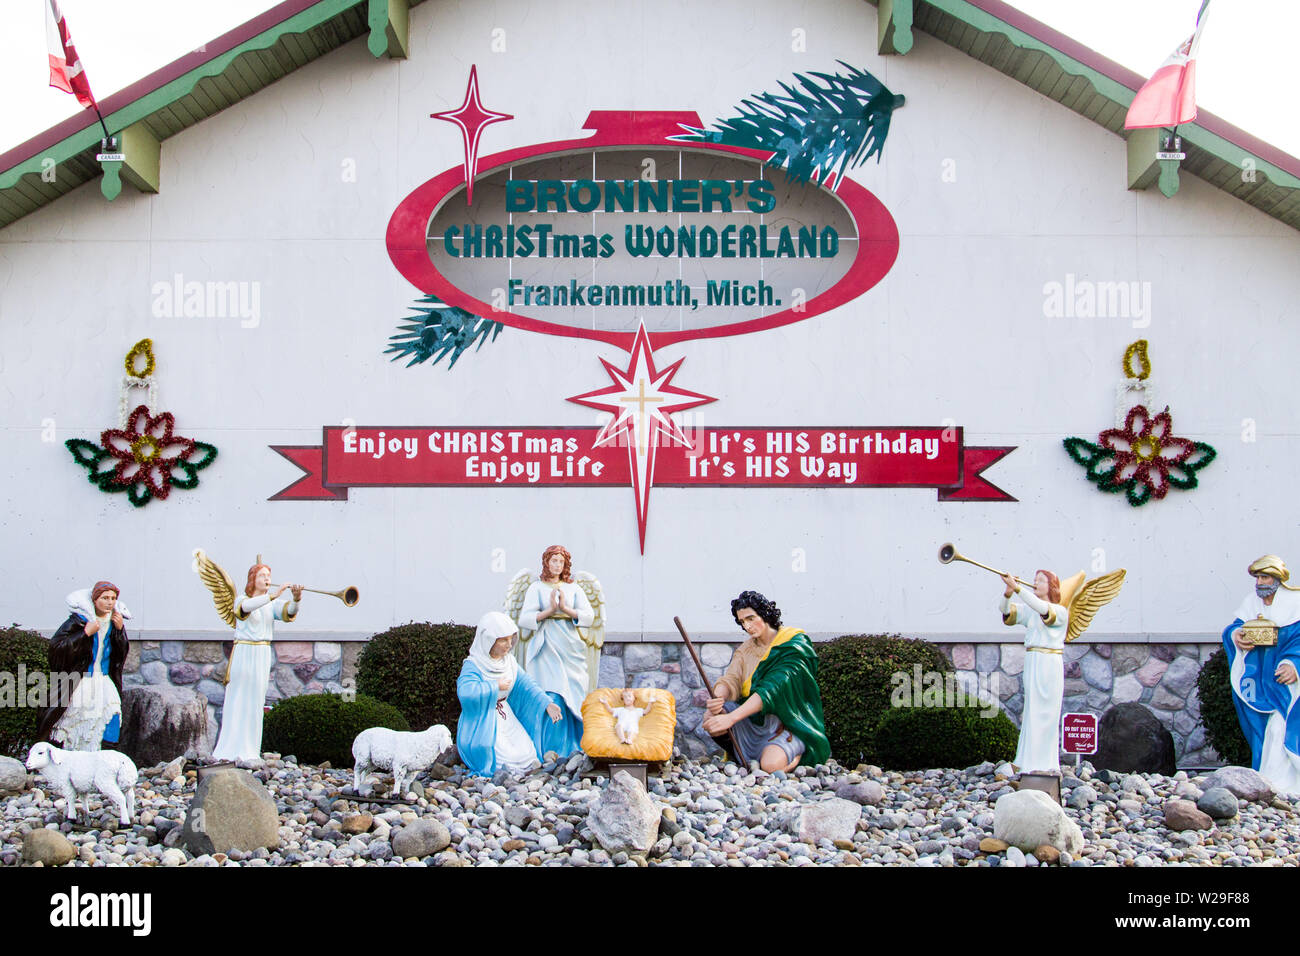 Frankenmuth, Michigan, USA - Oktober 9, 2018: Äußere des Bronner's Christmas Wonderland in Frankenmuth Stockfoto